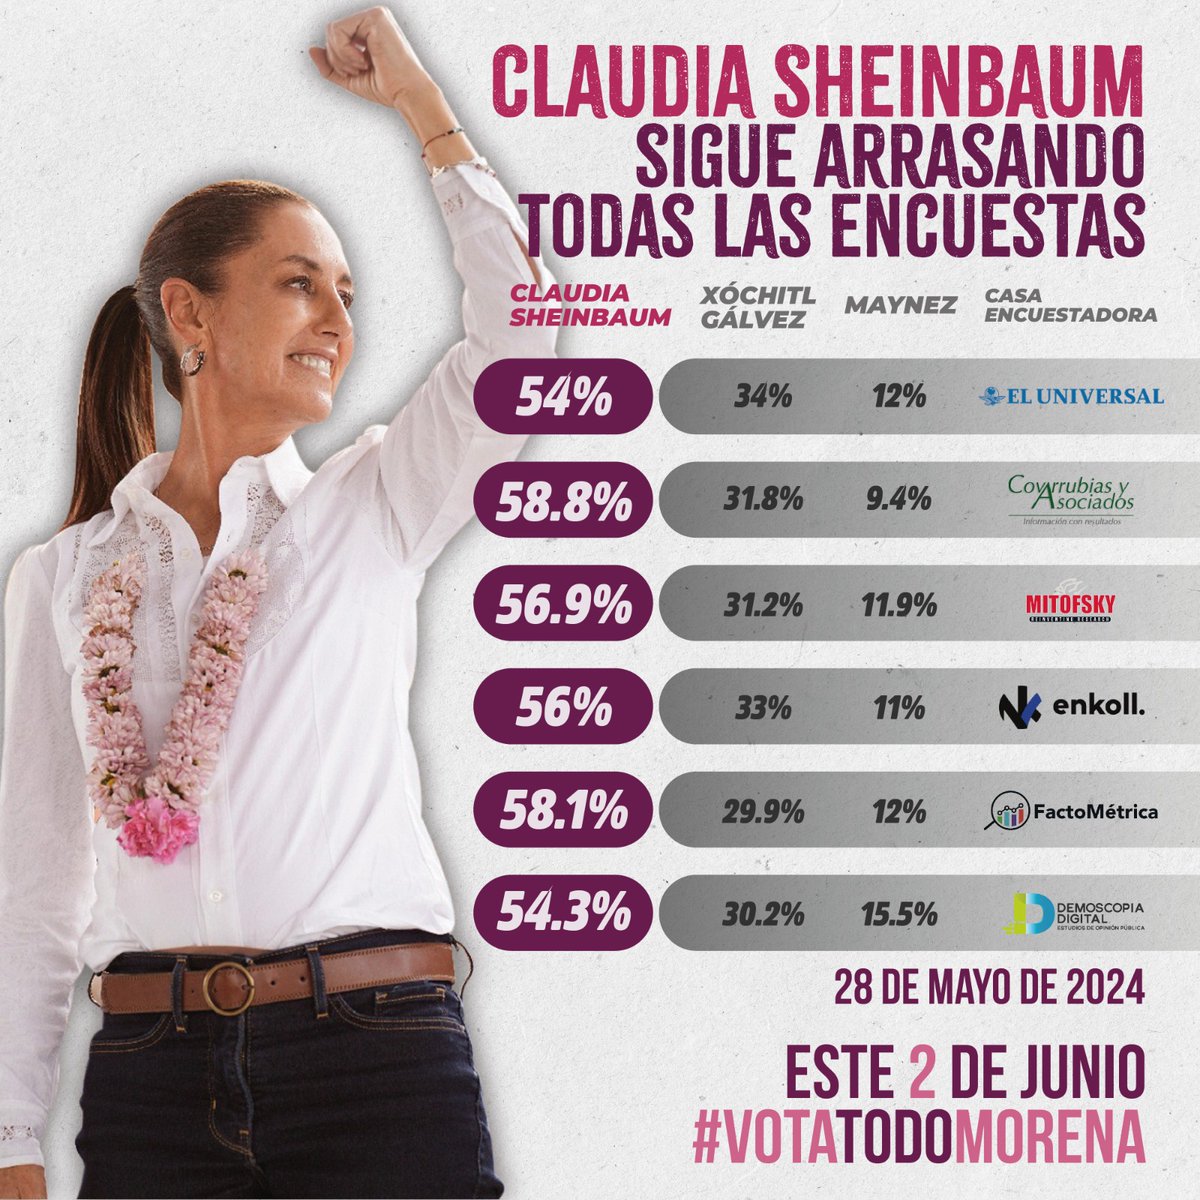 *Claudia Sheinbaum sigue arrasando en todas las encuestas* 🤩

Es la favorita de México para continuar con la transformación que inició en el 2018 🇲🇽 

Hagamos historia junto a ella este próximo 2 de junio vota por *#LaPrimera Presidenta*  *#VotaTodoMorena*
Todes juntes por la